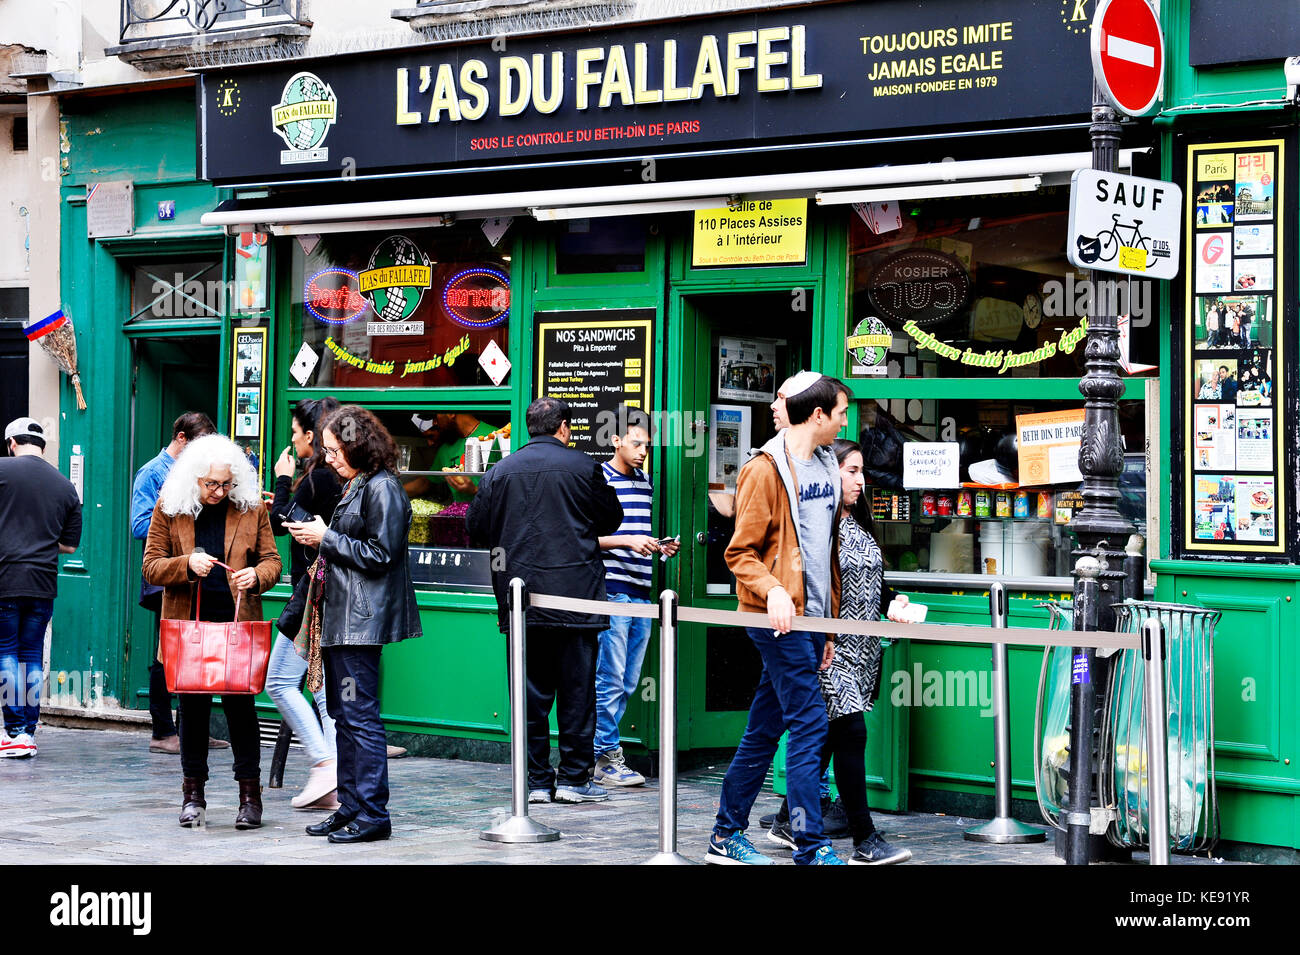 L'As du Fallafel, rue des Rosiers - Paris - France Stock Photo - Alamy